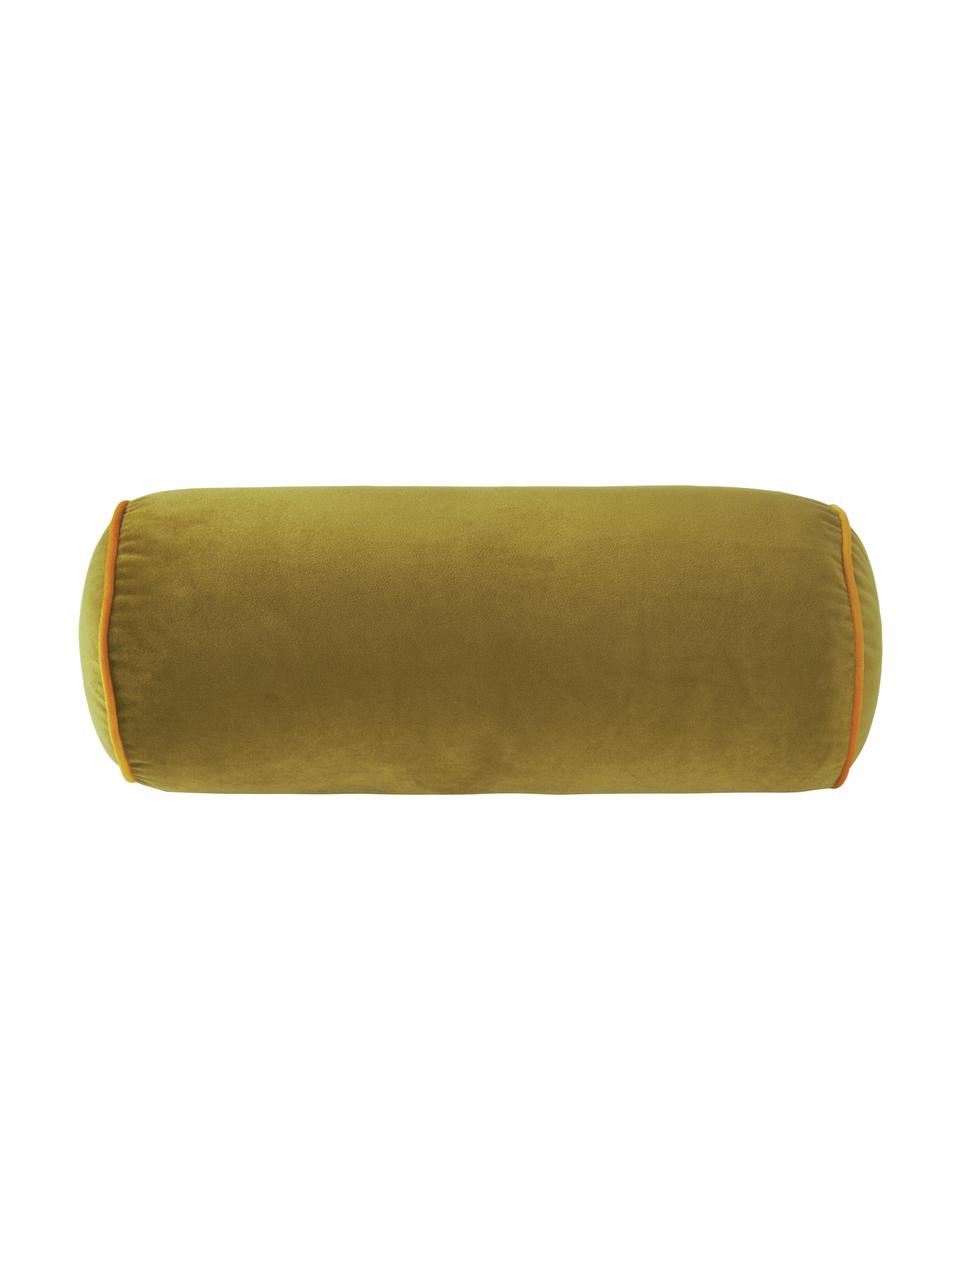 Traversin velours vert olive Monet, Vert, Ø 18 x long. 45 cm